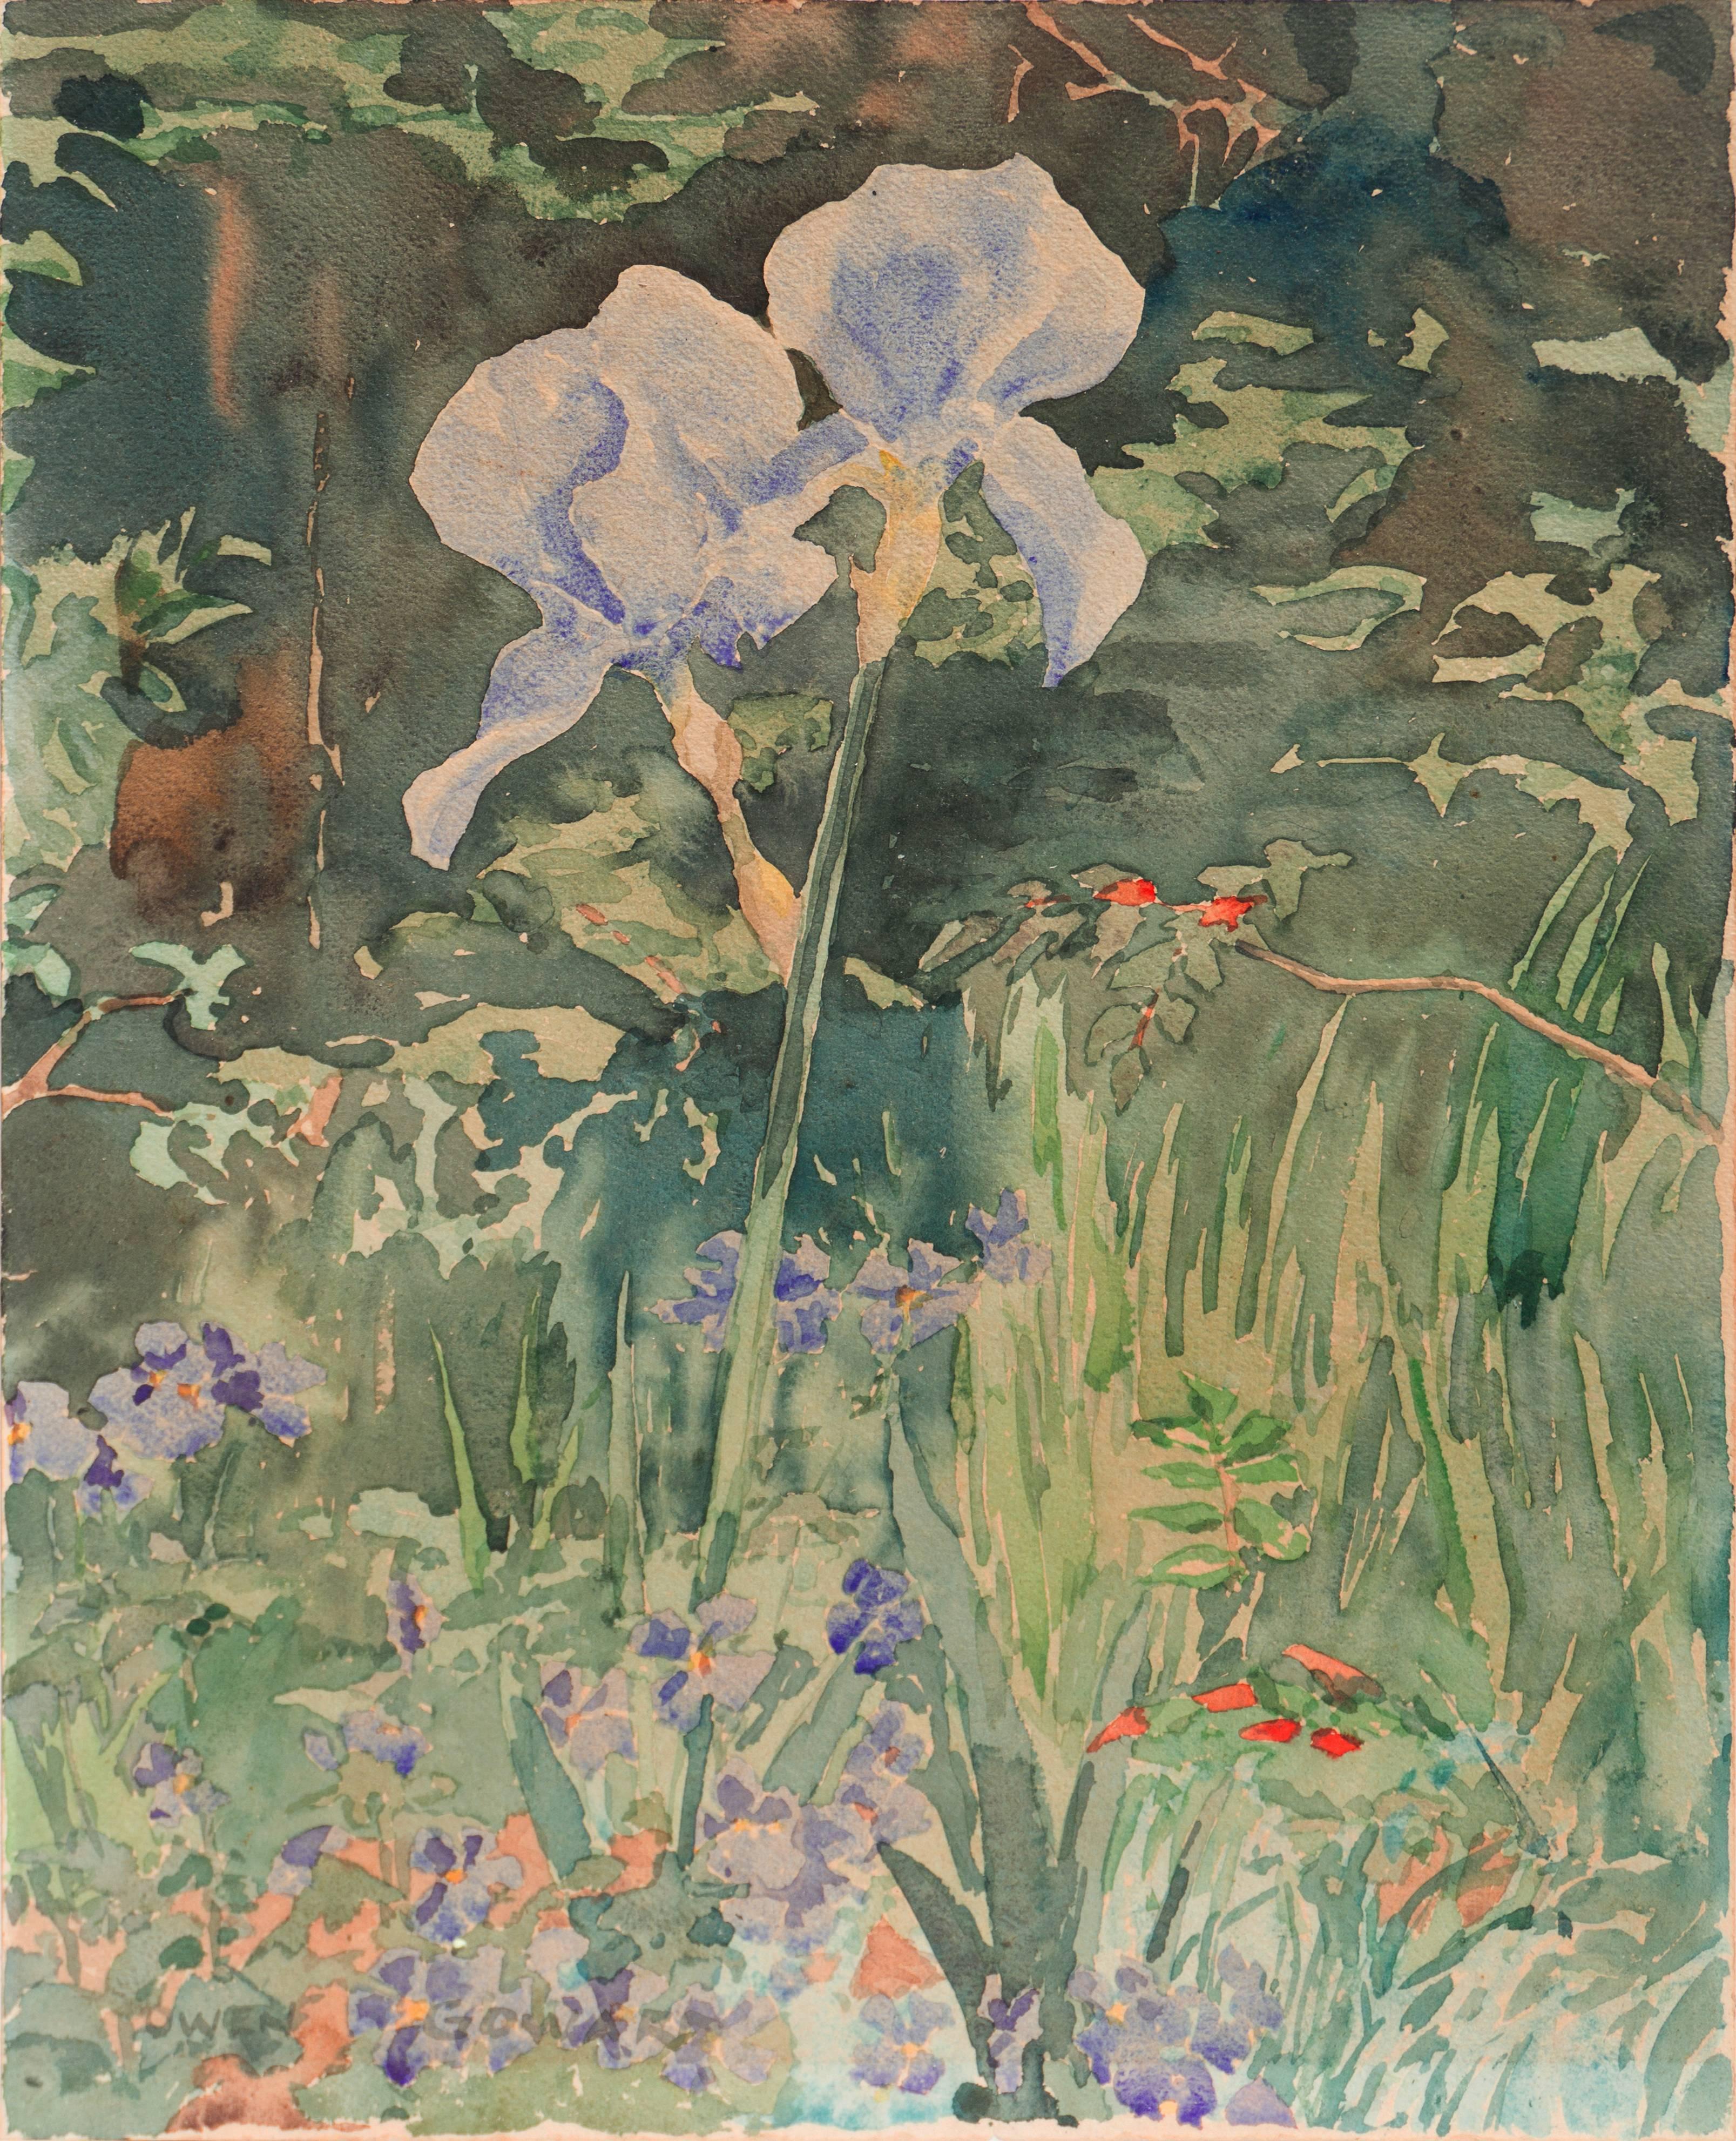 'Iris in a Garden', London Royal Academy, Canada